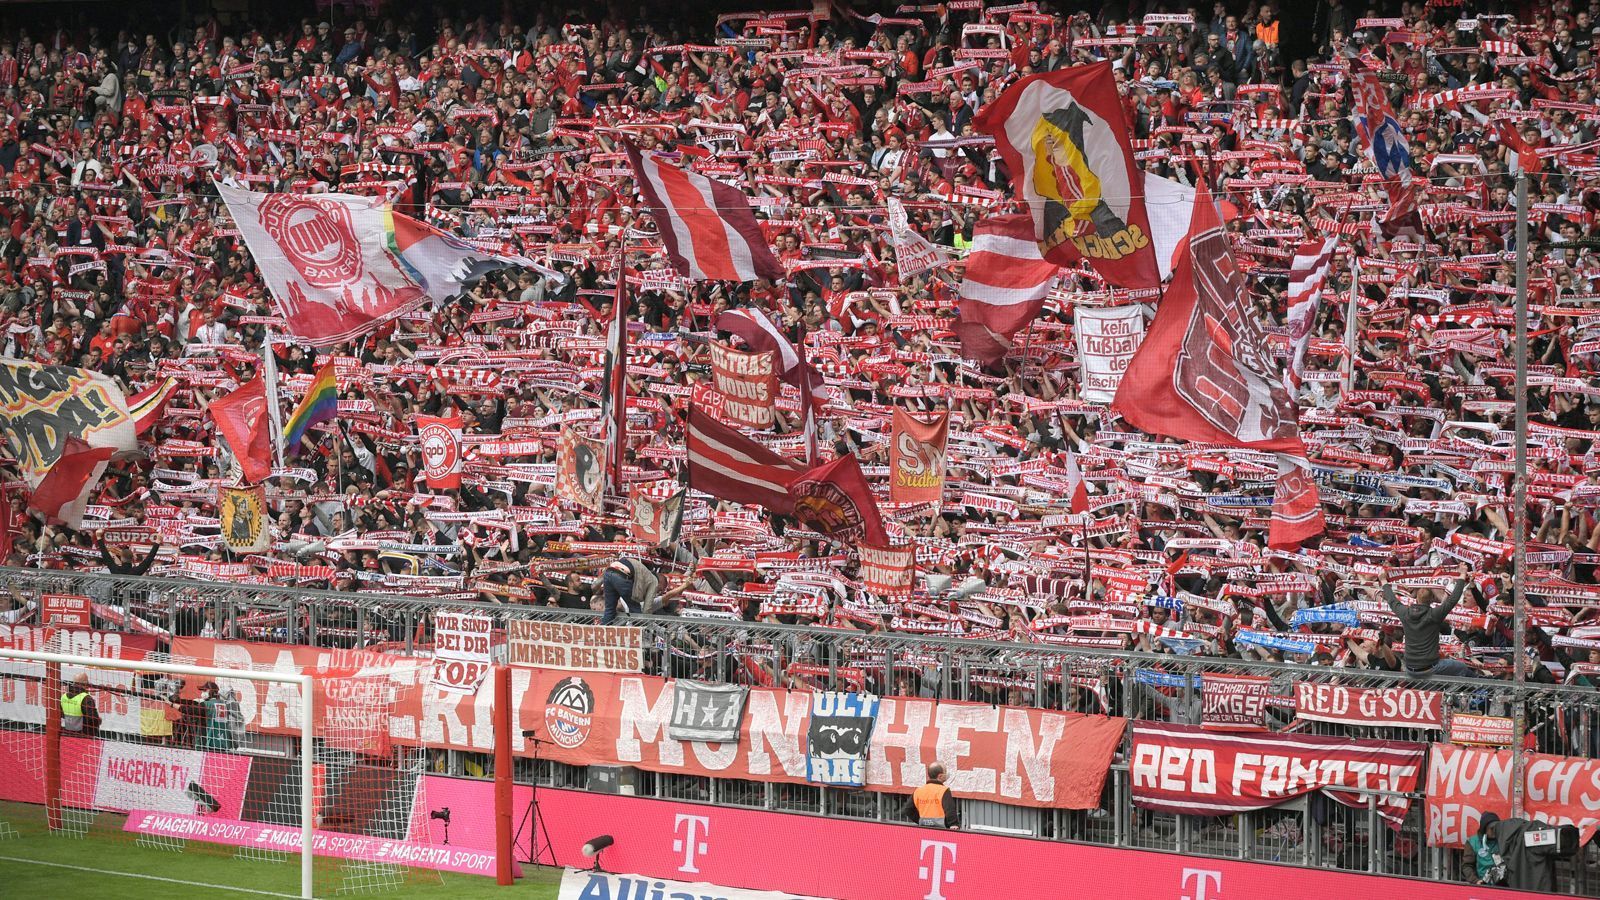 
                <strong>Platz 16: FC Bayern München</strong><br>
                Stehplatz: 160 Euro - vergangene Saison: 145 EuroTeuerste Sitzplatzkategorie: 810 Euro (ligaweit Platz 6) - vergangene Saison: 765 Euro
              